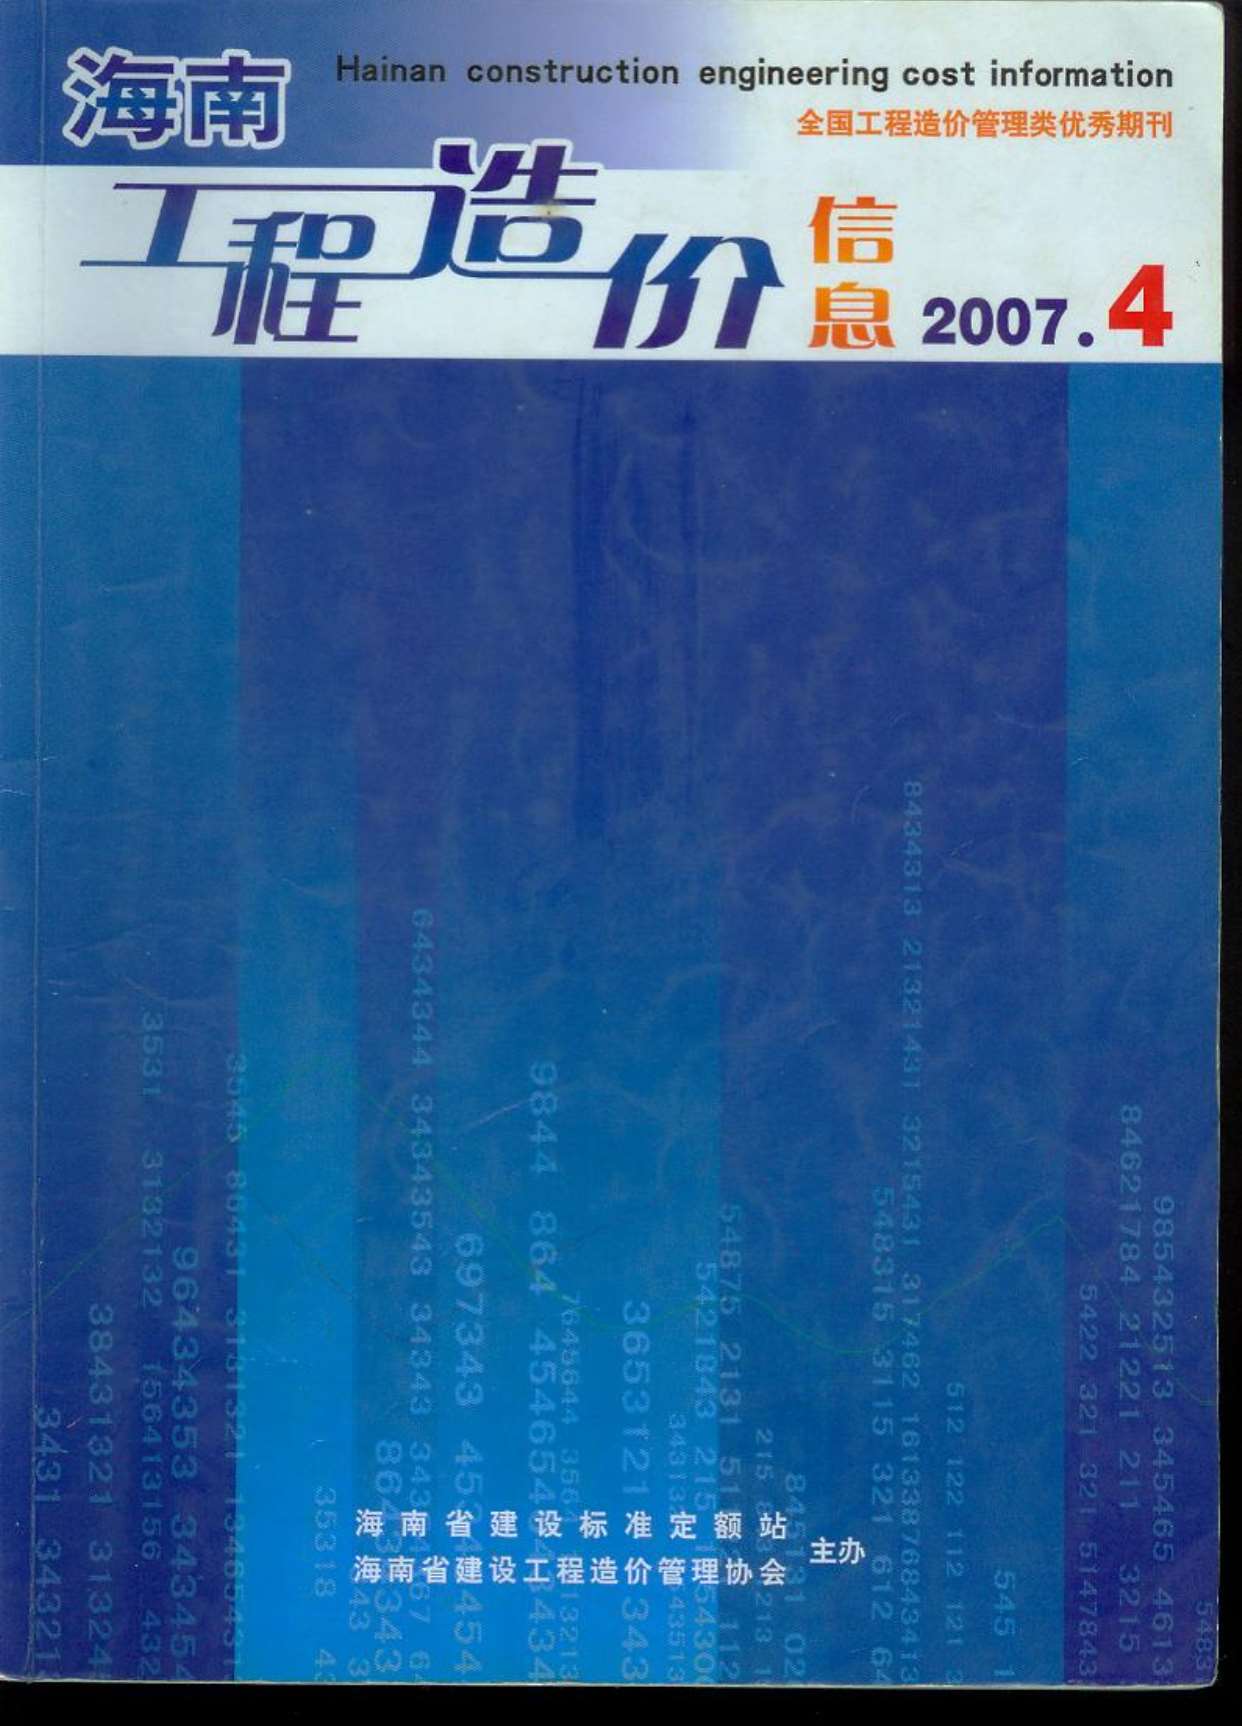 海南省2007年4月造价库信息造价库信息网